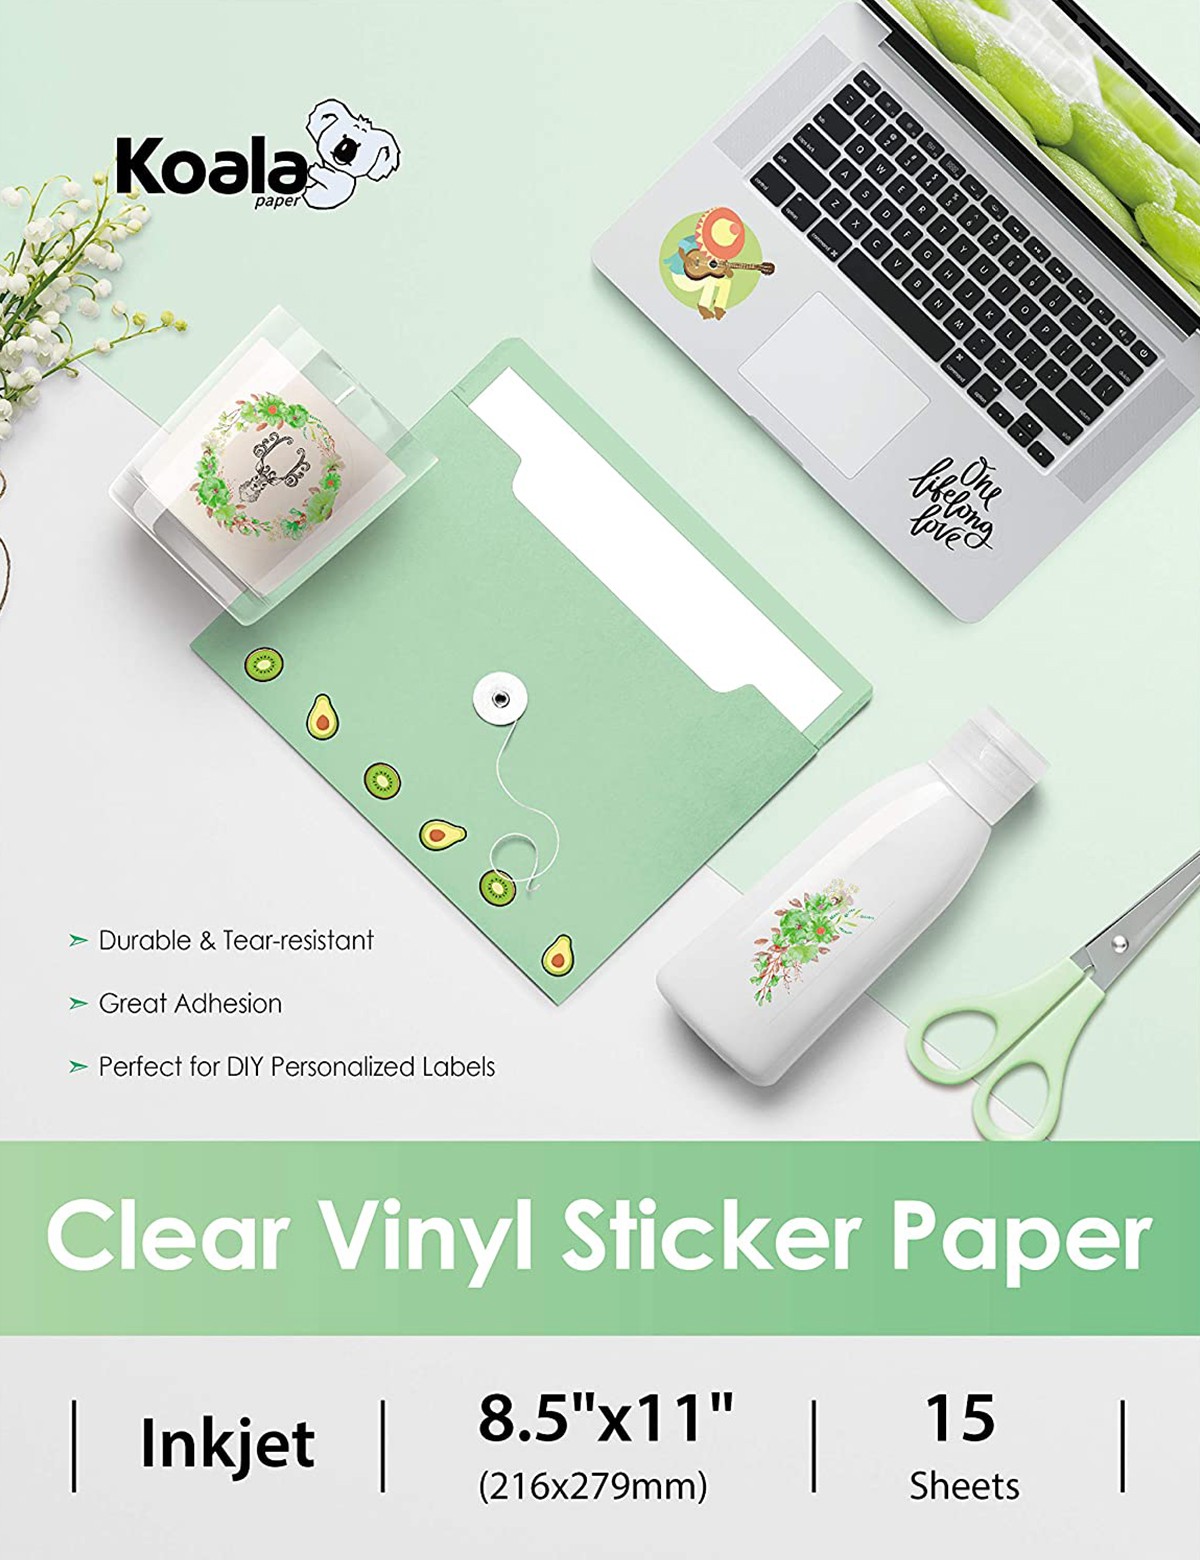 Koala Waterproof Printable Clear Sticker Paper for Inkjet Printers 8.5x11  in 15 Sheets